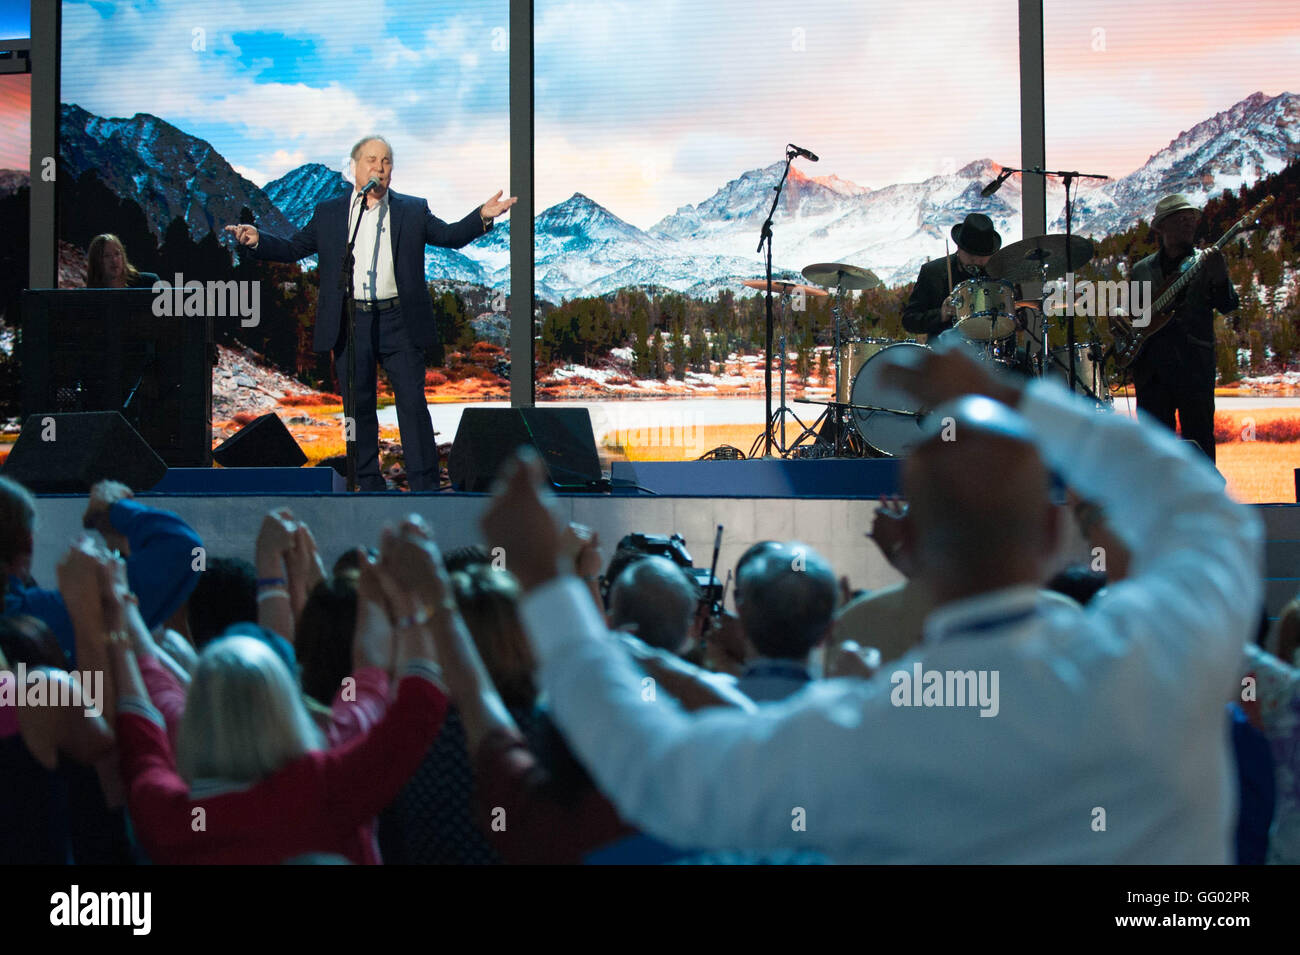 2016 Convenzione Nazionale Democratica delegati unire le mani e ondeggiano avanti e indietro mentre la rock star Paul Simon esegue il ponte sopra l'acqua disturbata a Wells Fargo center di Filadelfia in Pennsylvania Stati Uniti d'America | Foto Stock